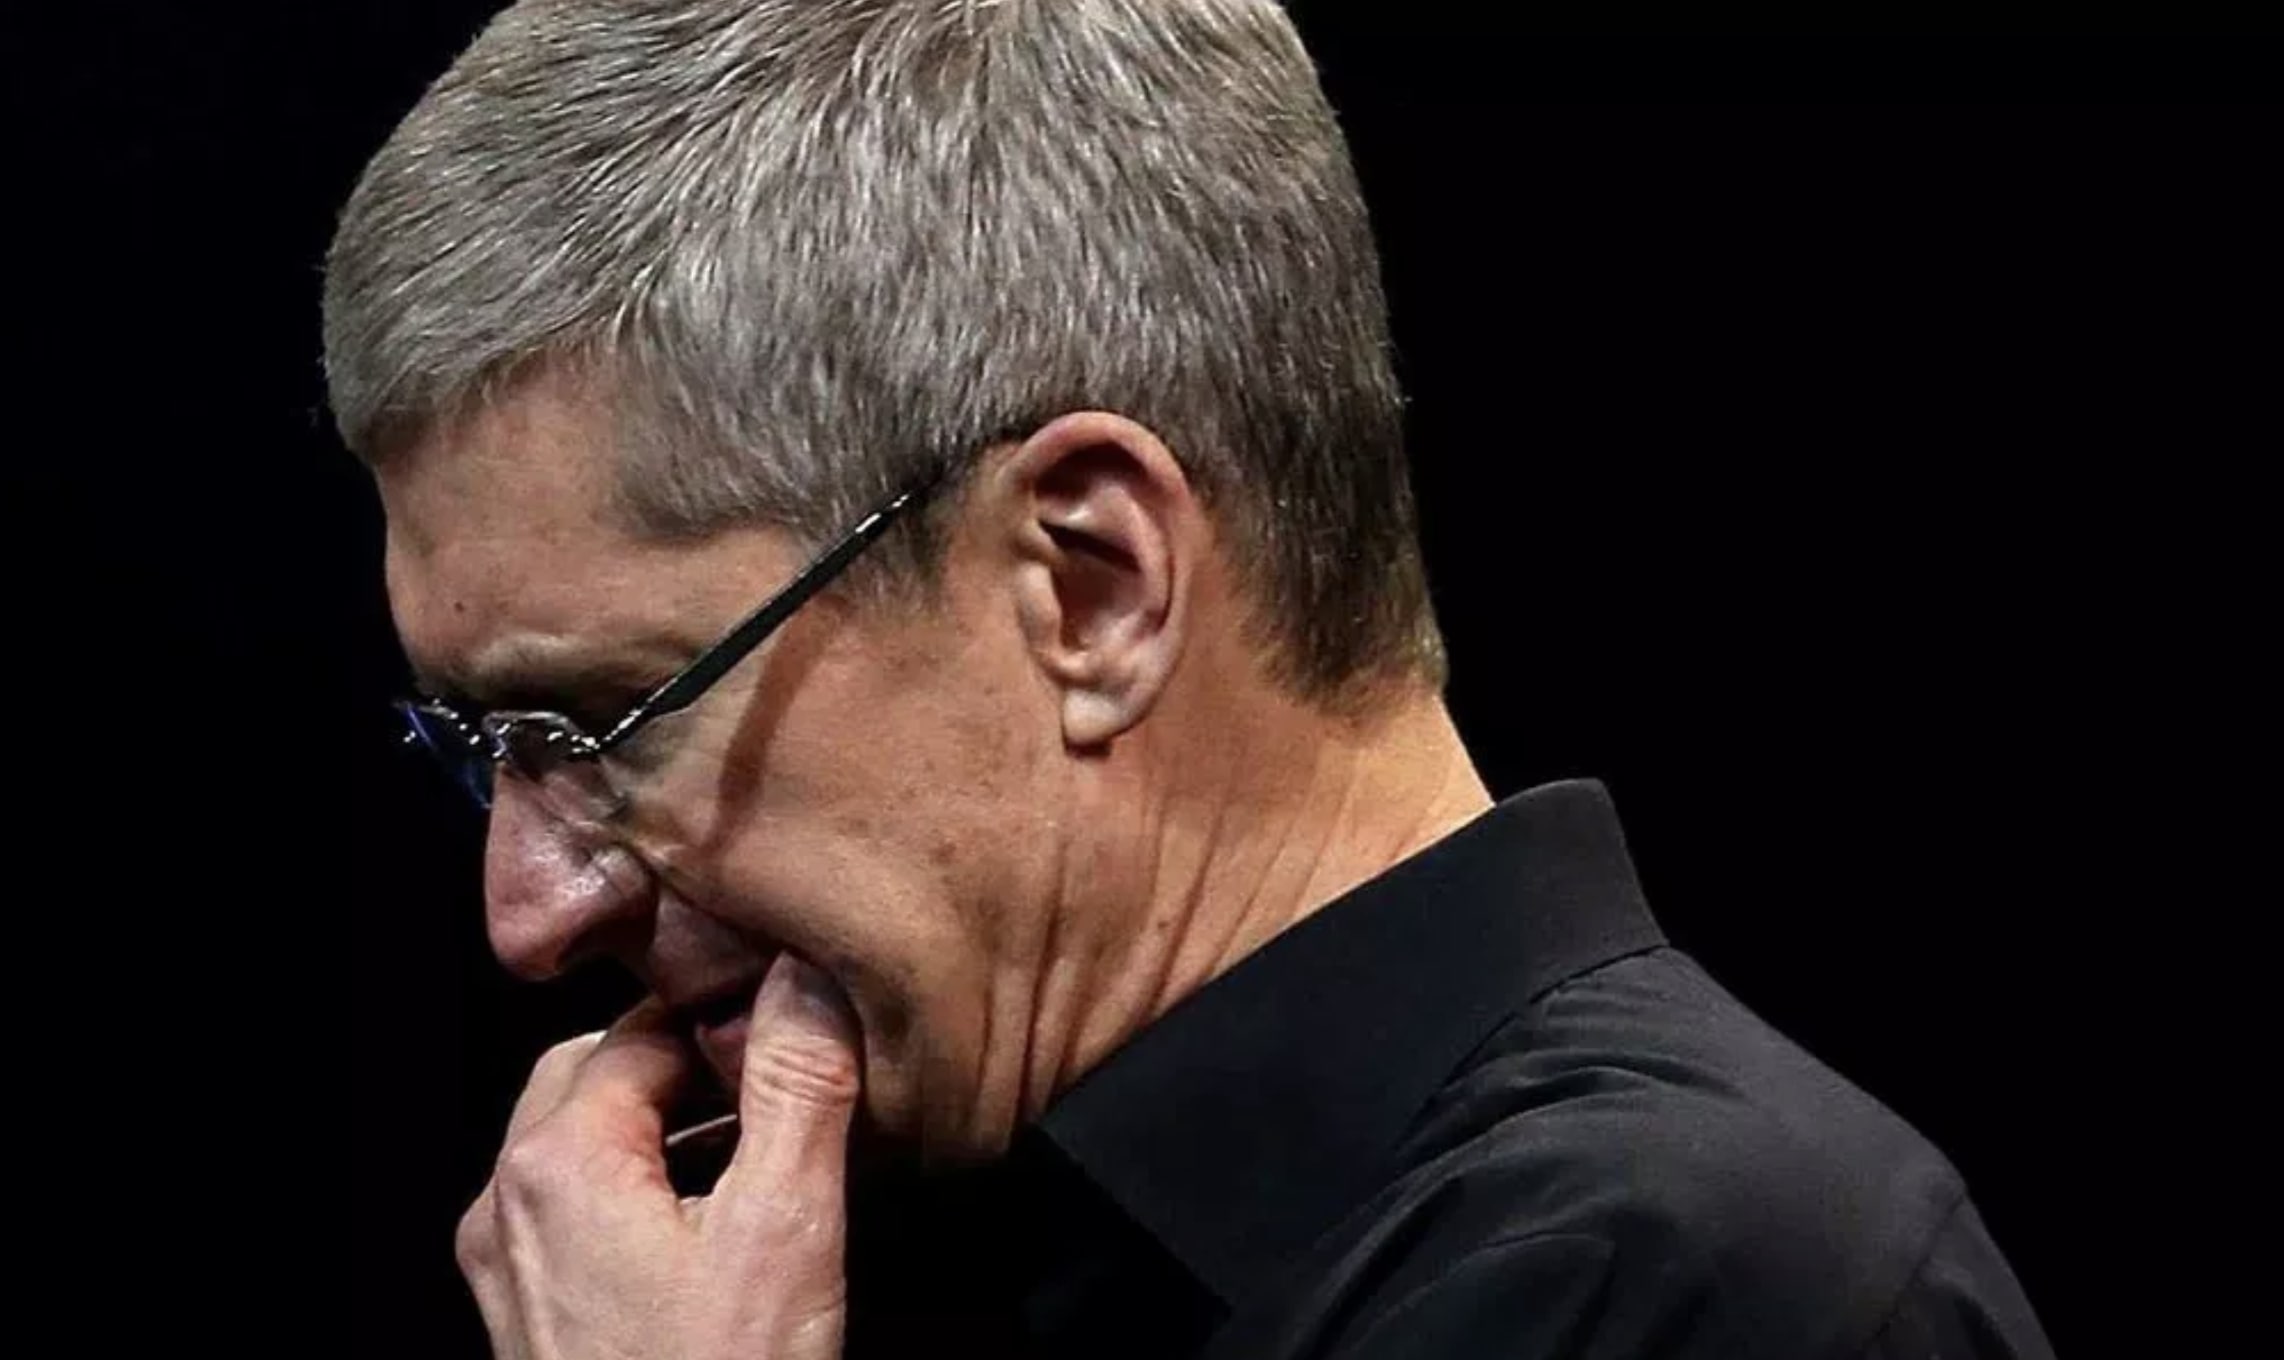 Apple har falt på lista over verdens mest innovative selskaper.